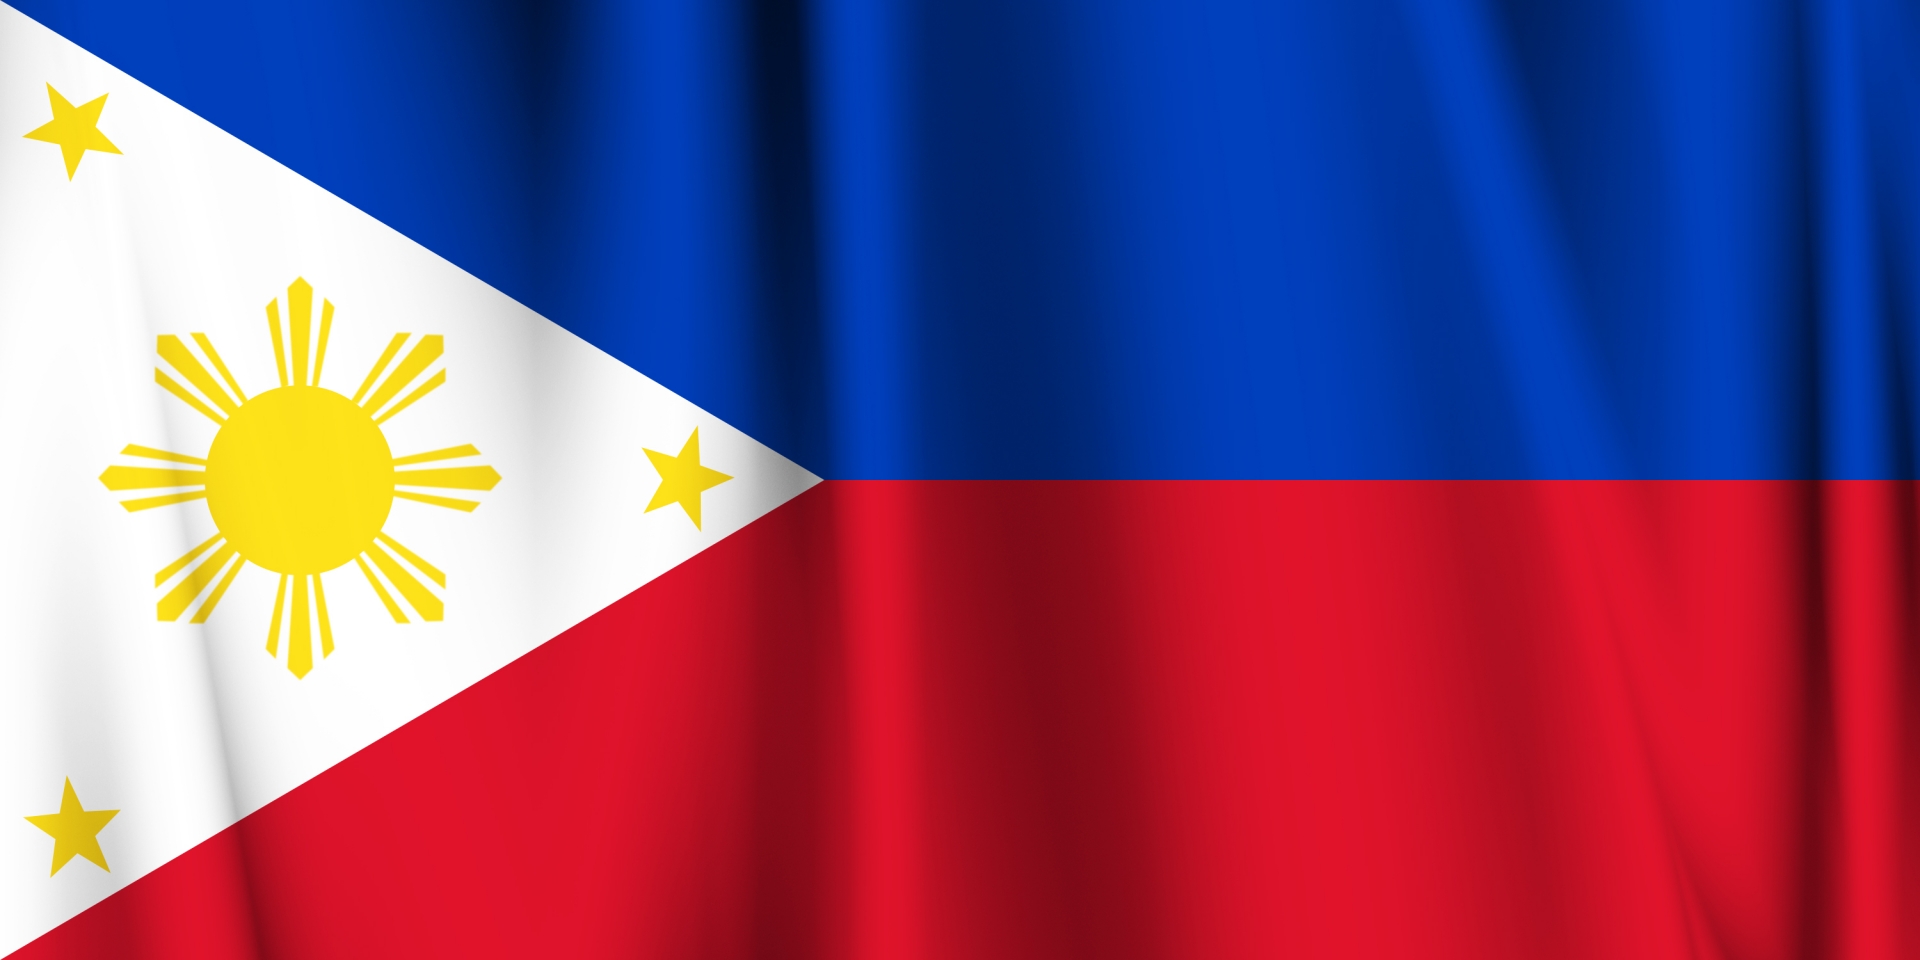 フィリピン国旗 ワンストップのデジタルサイネージ サイネージ リレーション